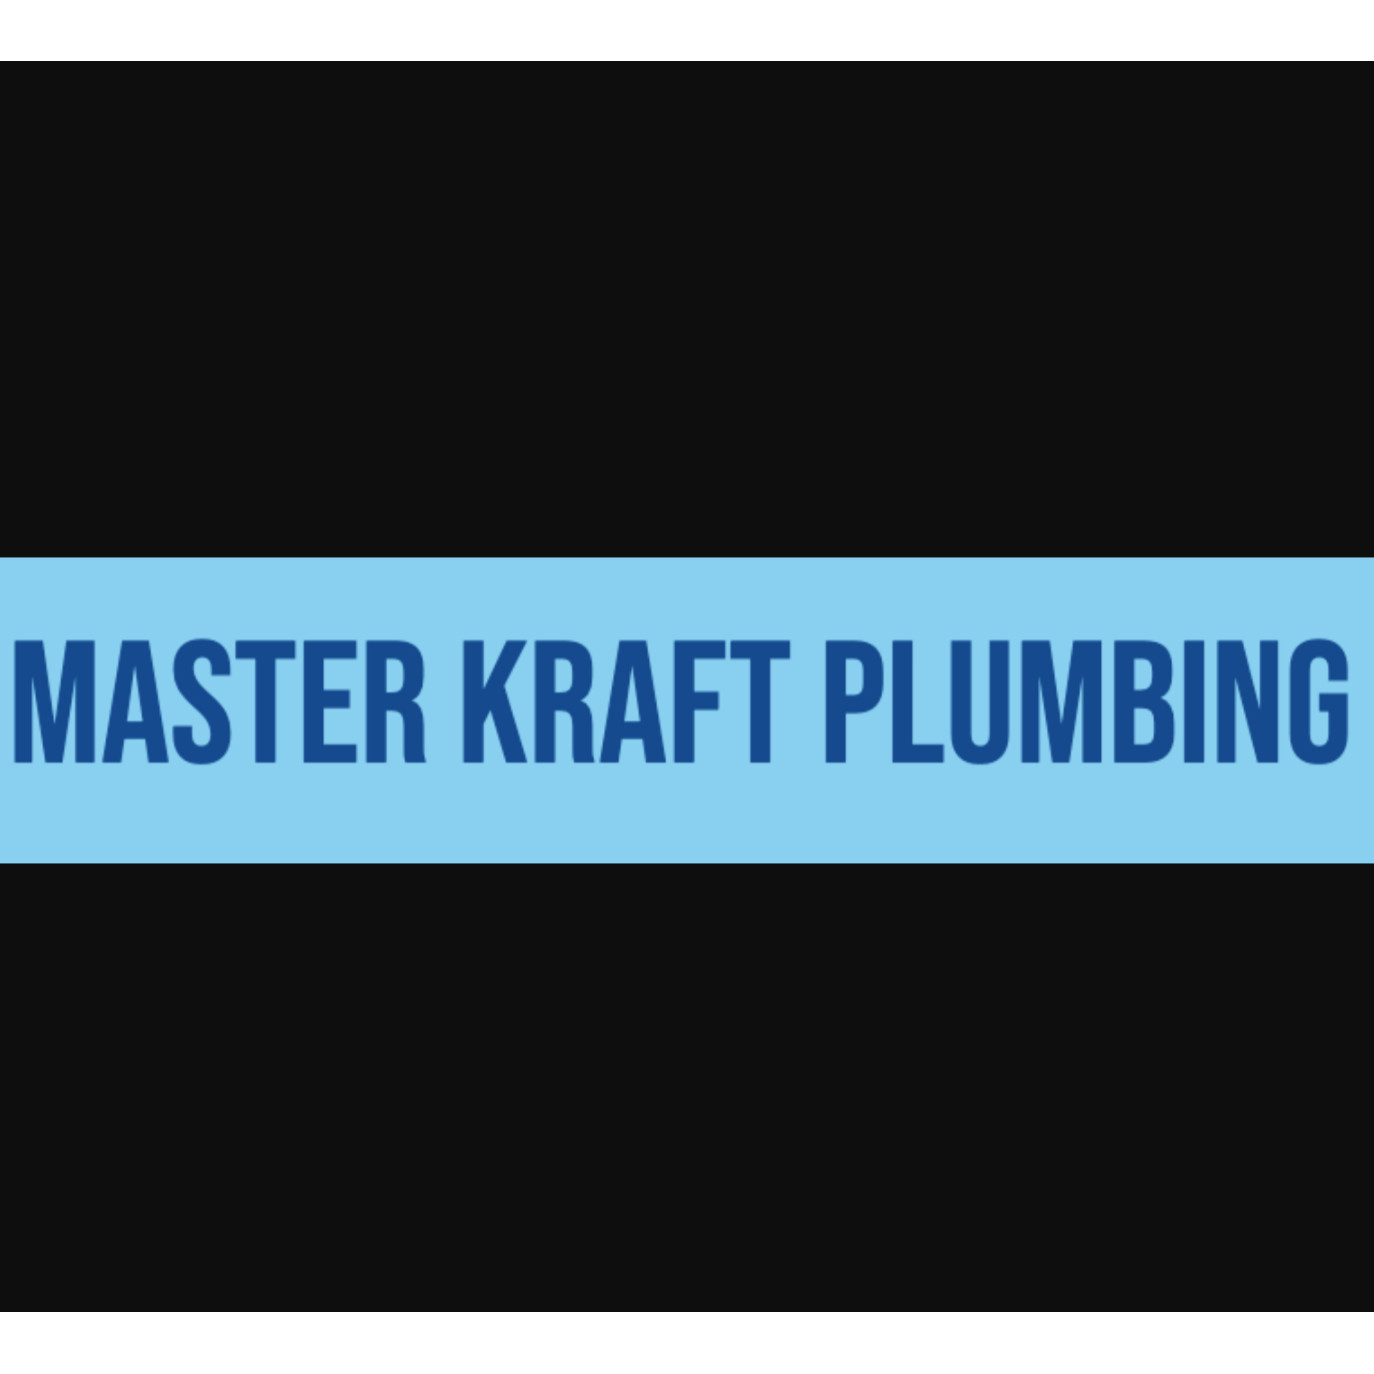 Master Kraft Plumbing